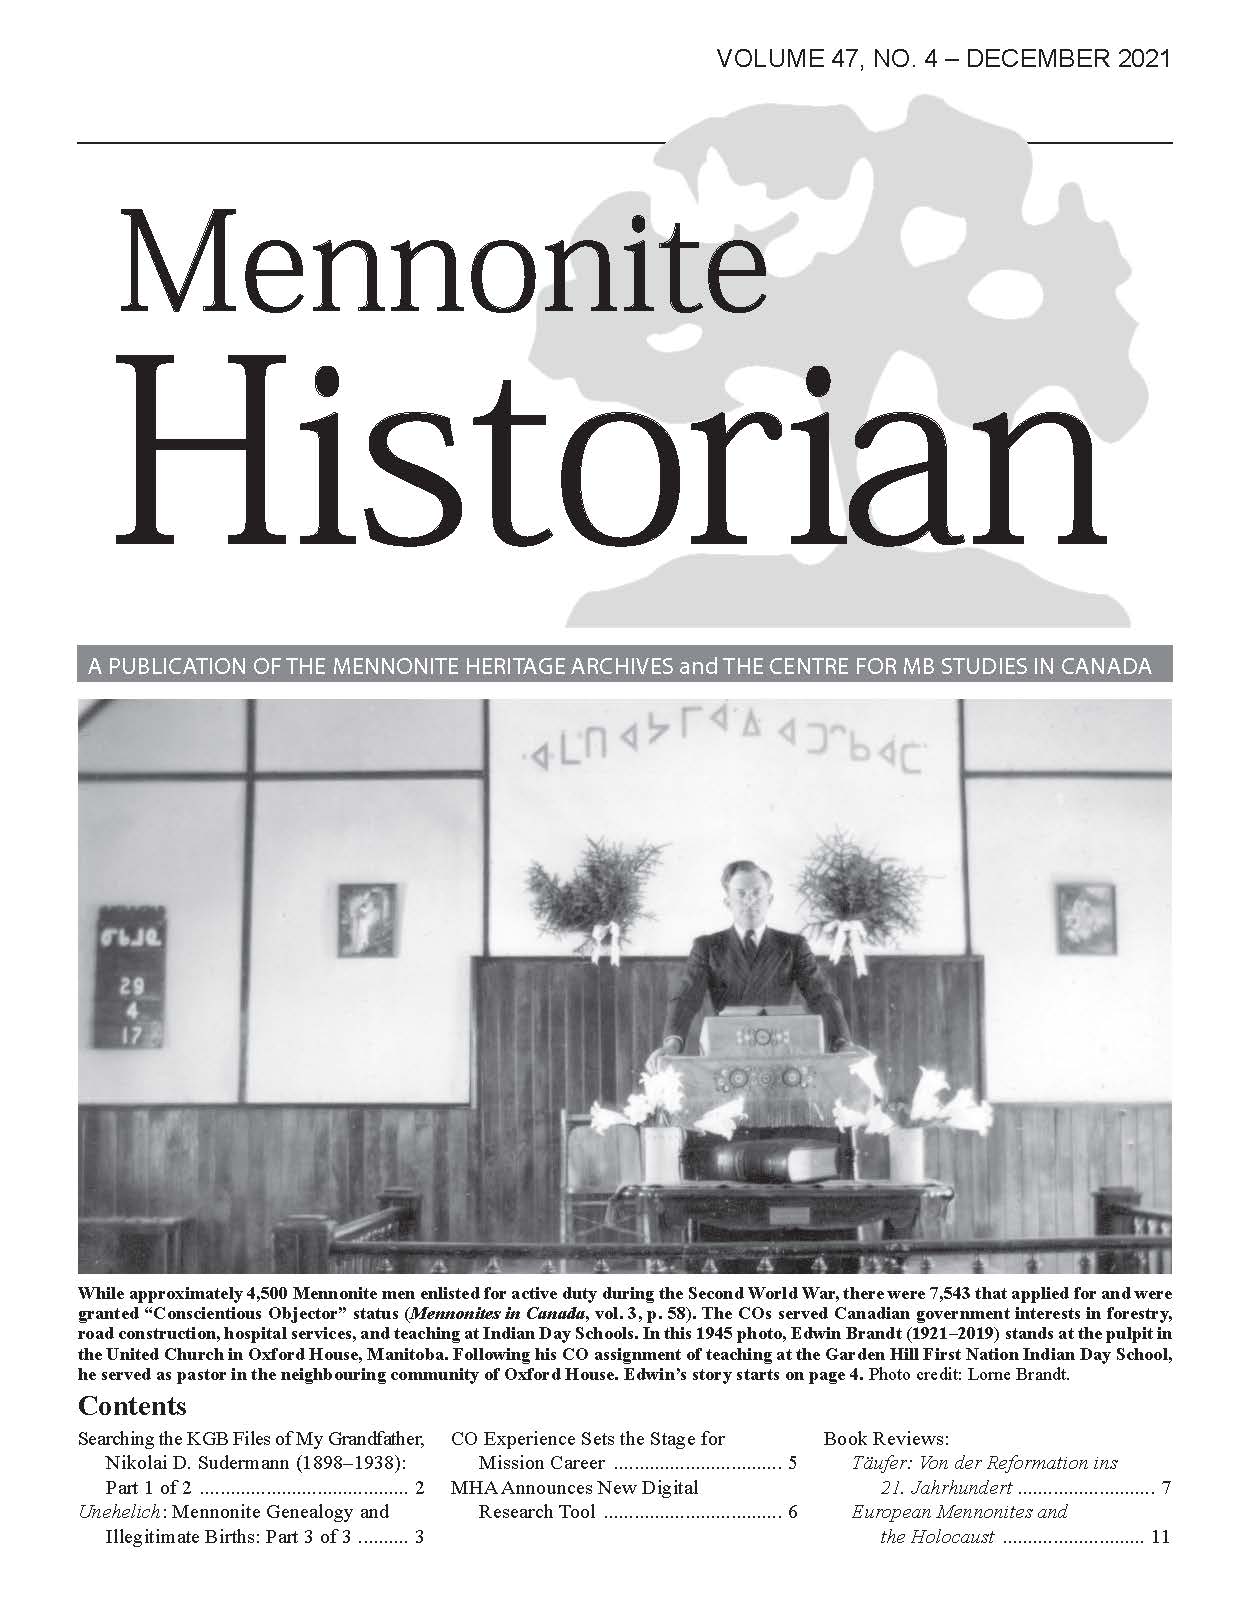 Mennonite Historian (December 2021)